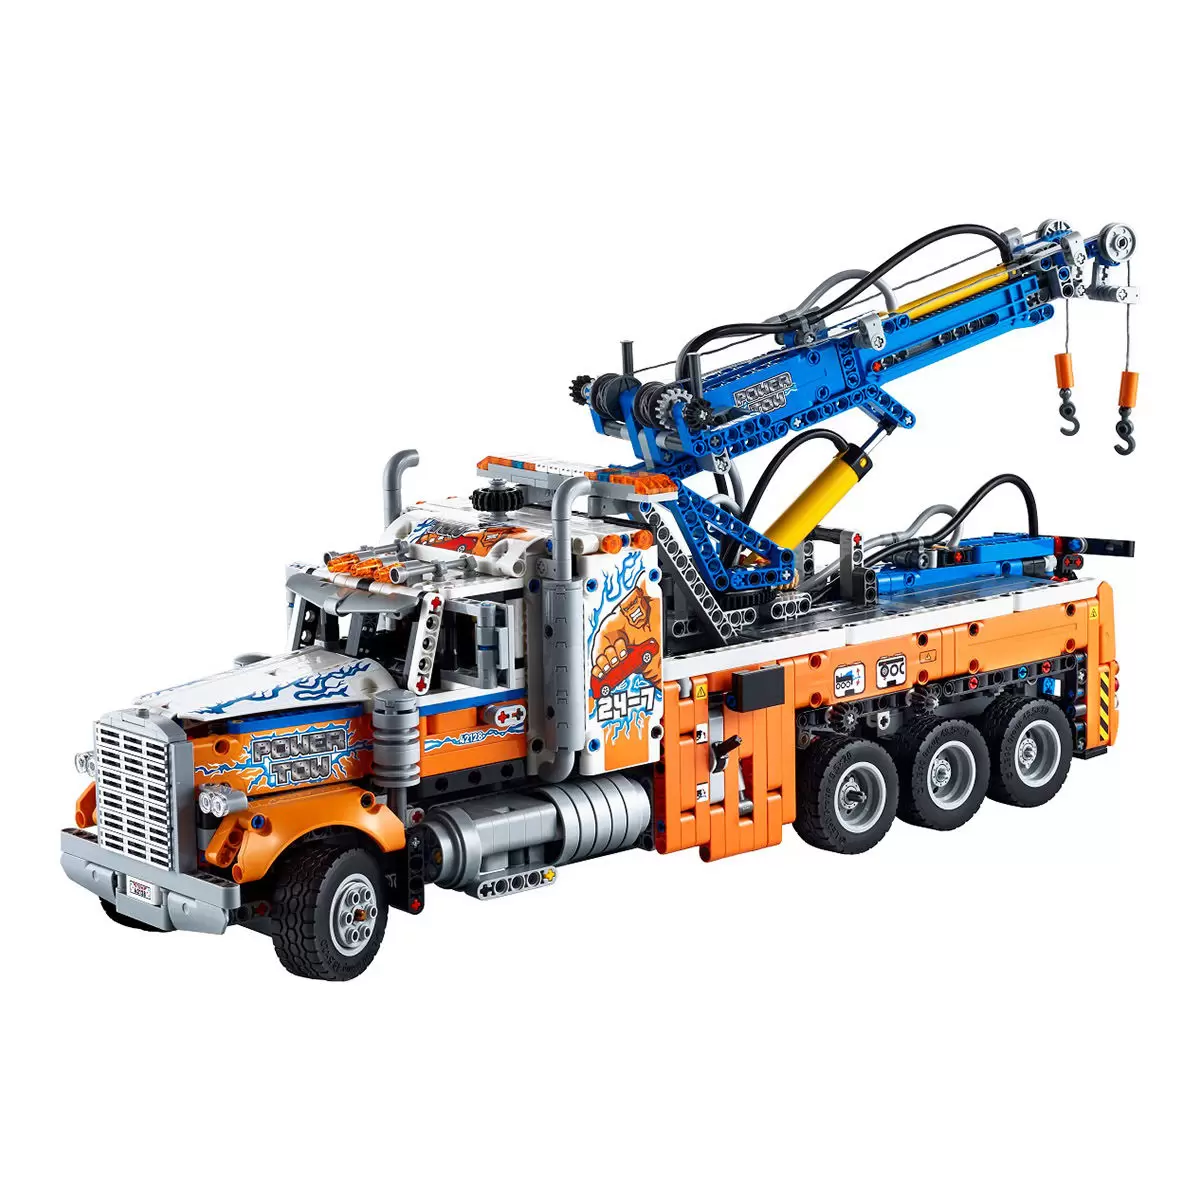 LEGO 科技系列 重型拖吊車 42128